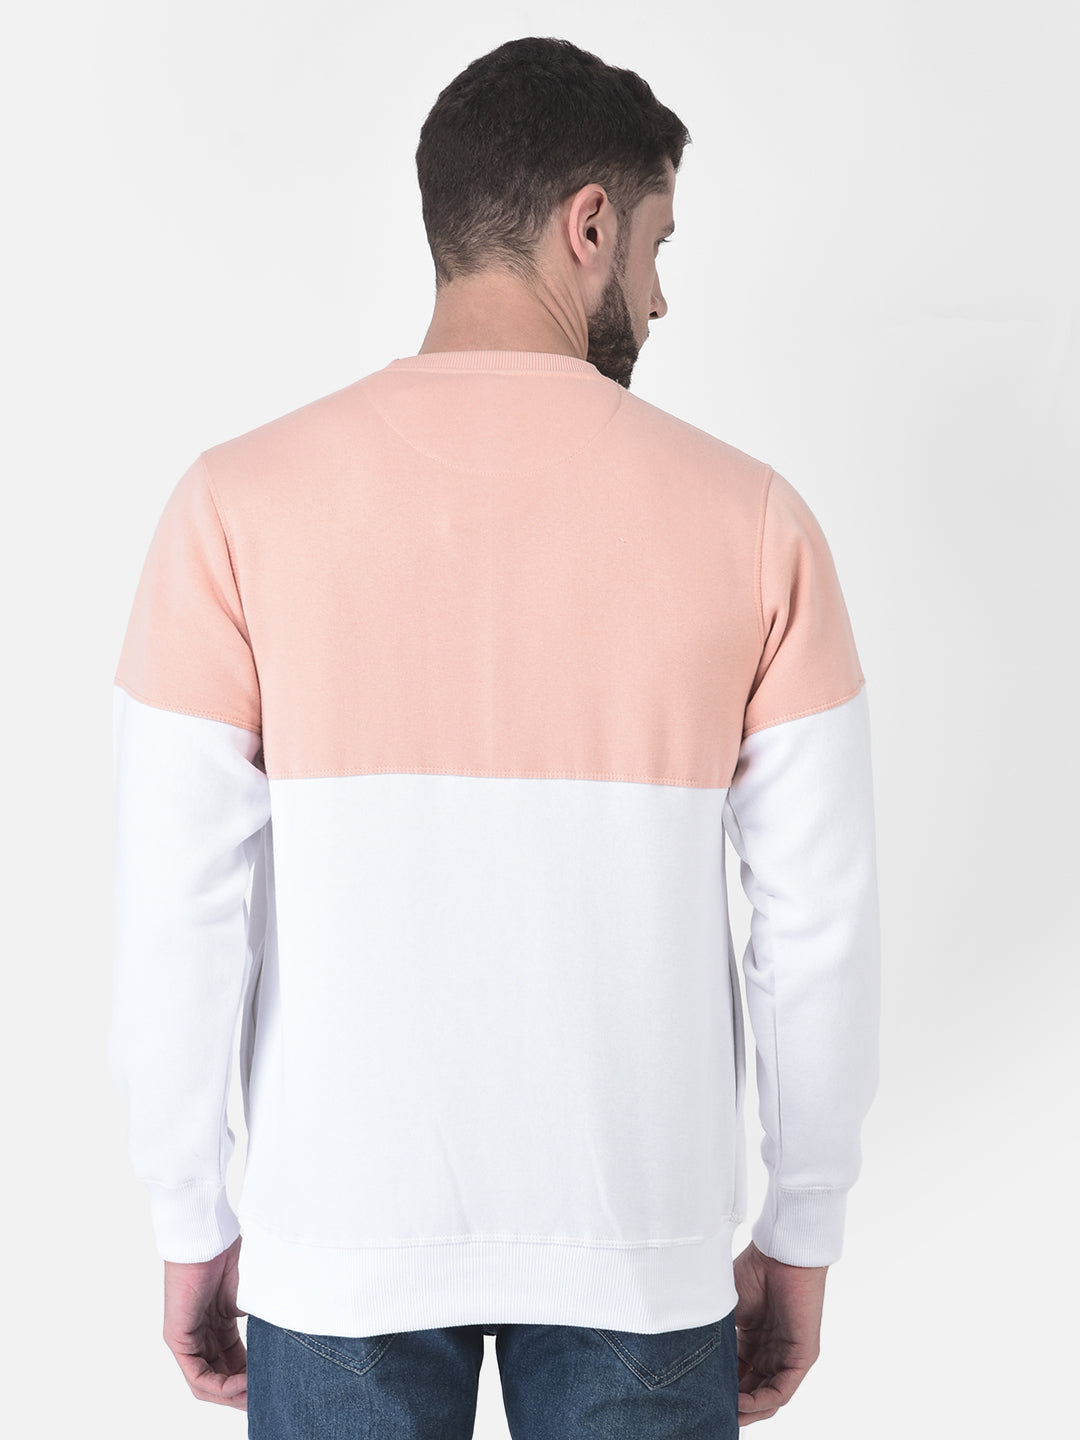 Cobb Peach Striped Round Neck Sweatshirt